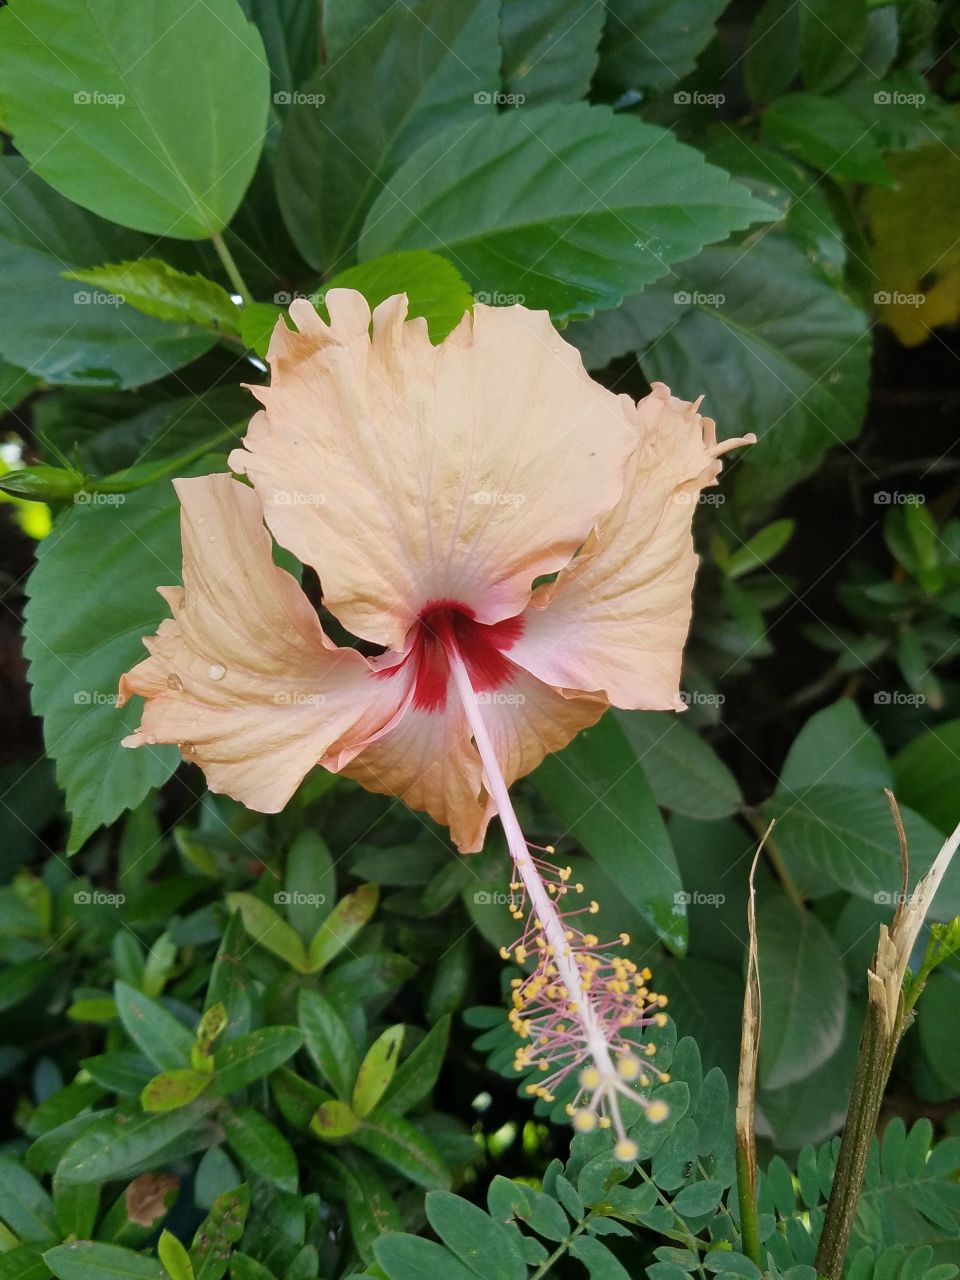 Hybiscus flower